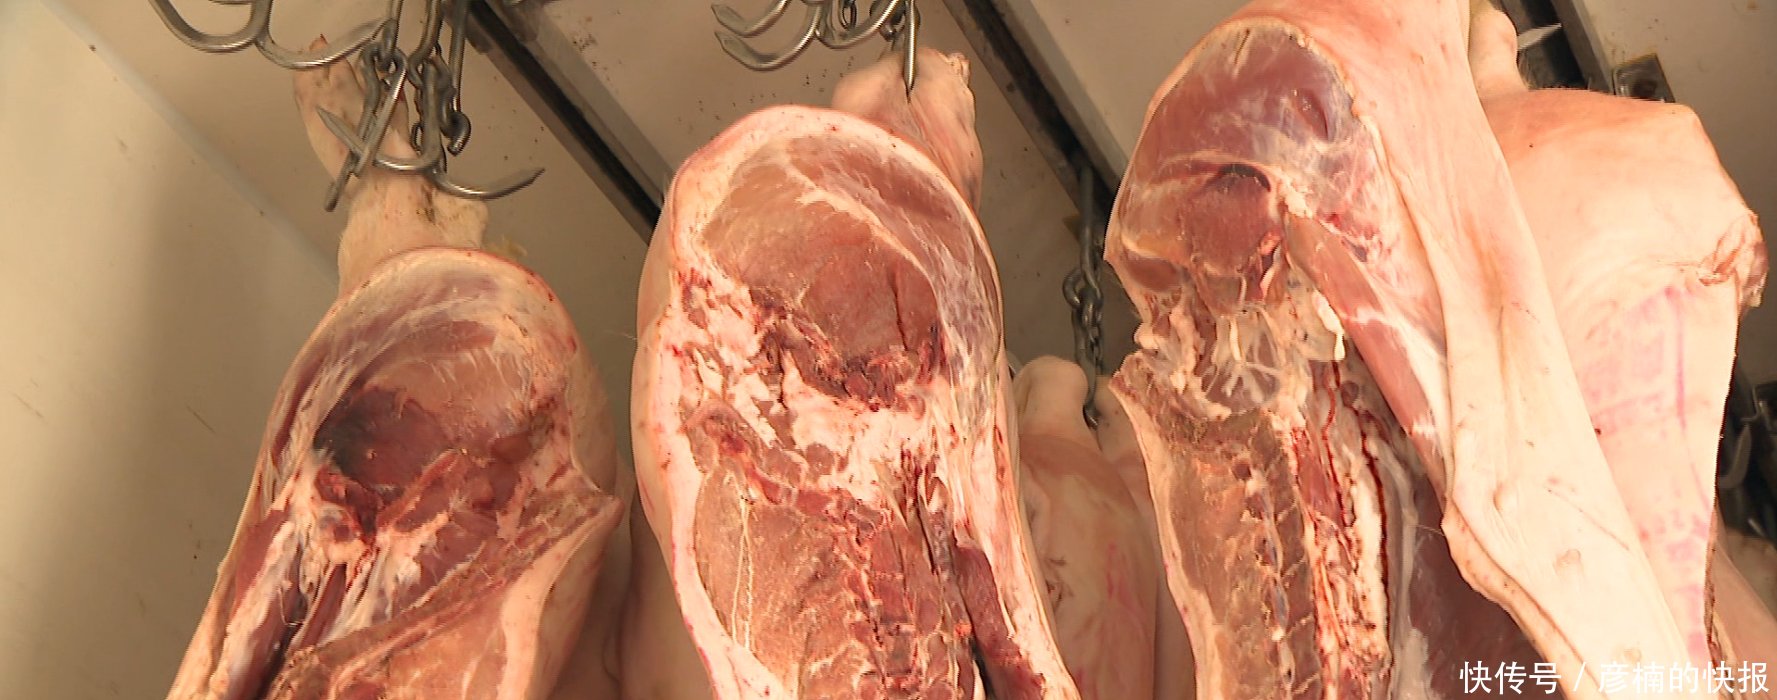 苏州长江路农副产品批发市场猪肉已变质 80头